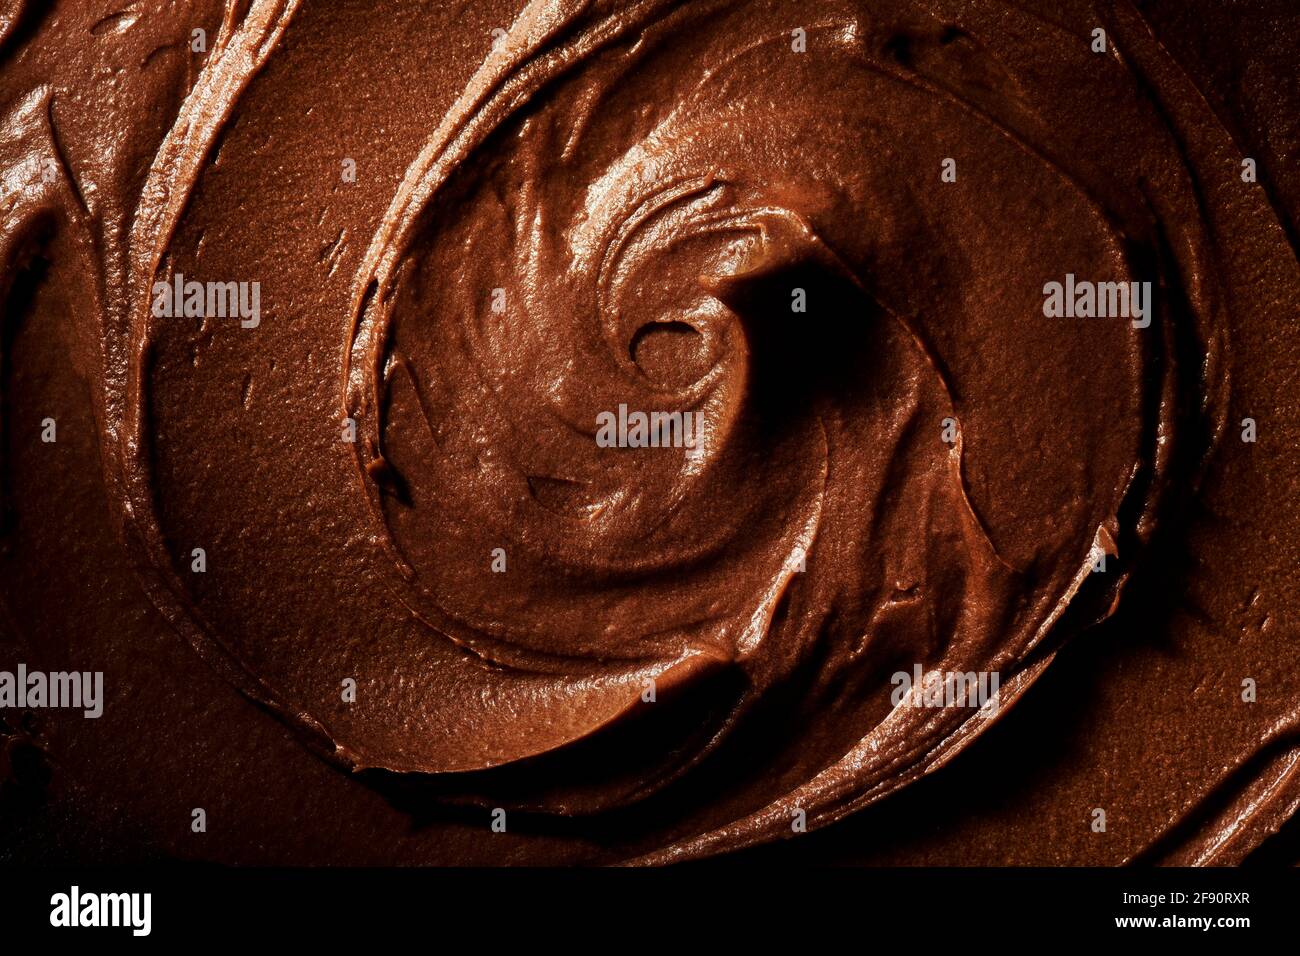 Imagen detallada del remolino de chocolate. Foto de stock